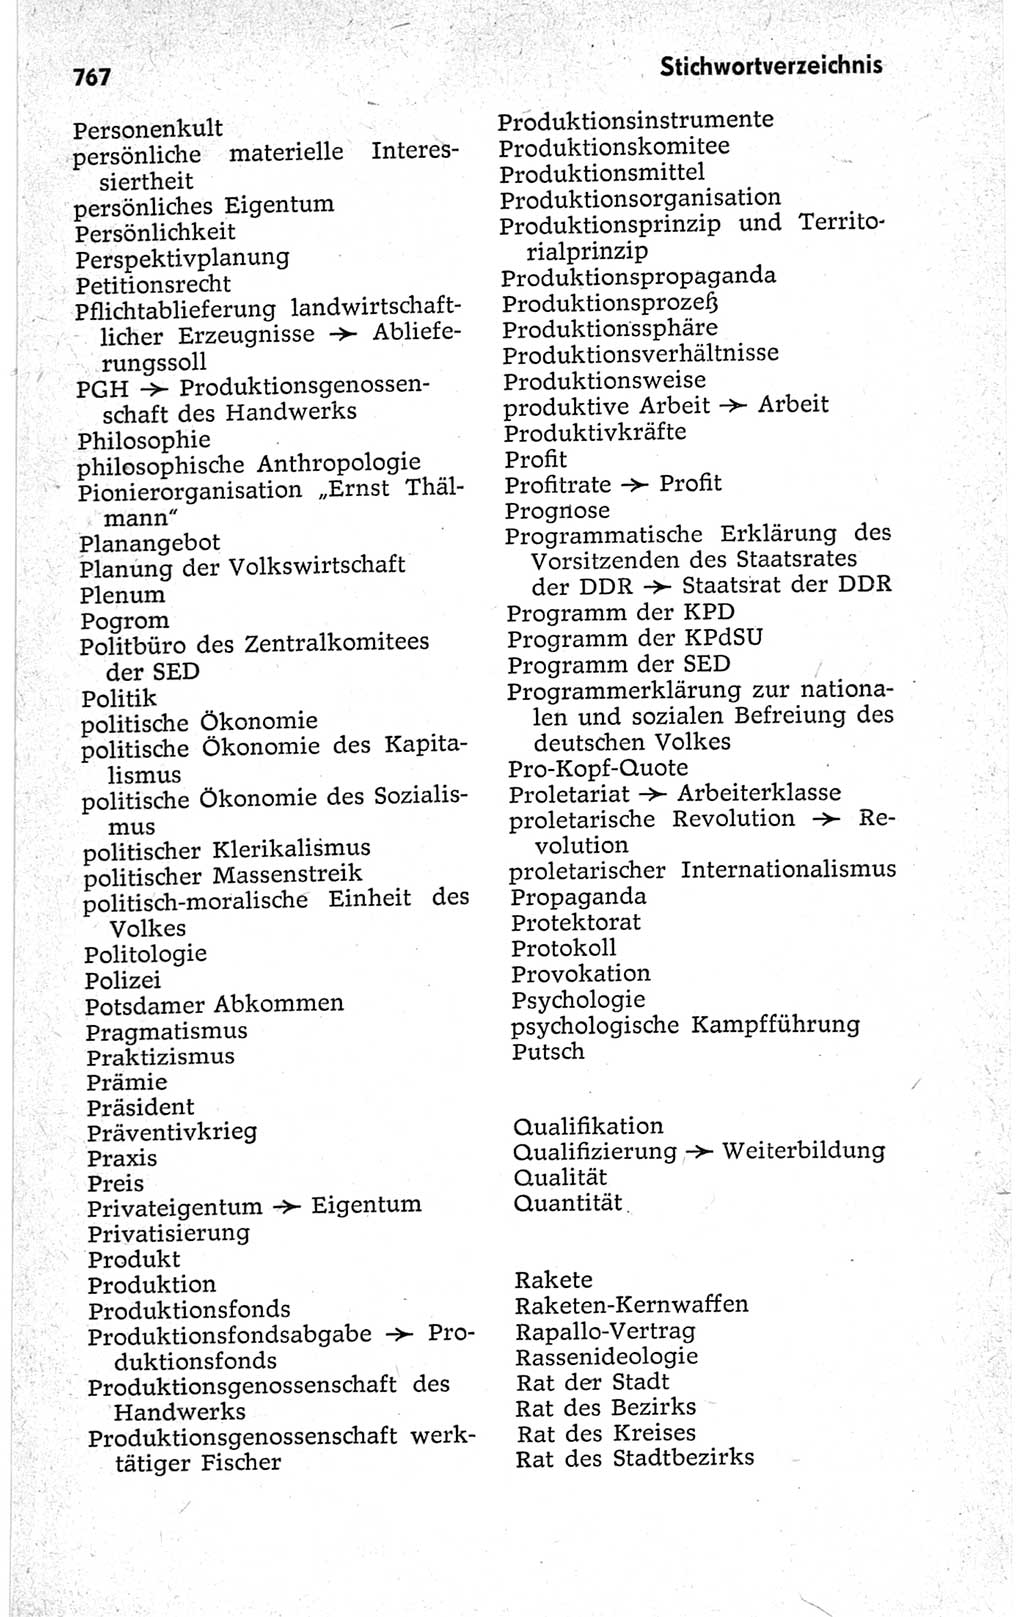 Kleines politisches Wörterbuch [Deutsche Demokratische Republik (DDR)] 1967, Seite 767 (Kl. pol. Wb. DDR 1967, S. 767)